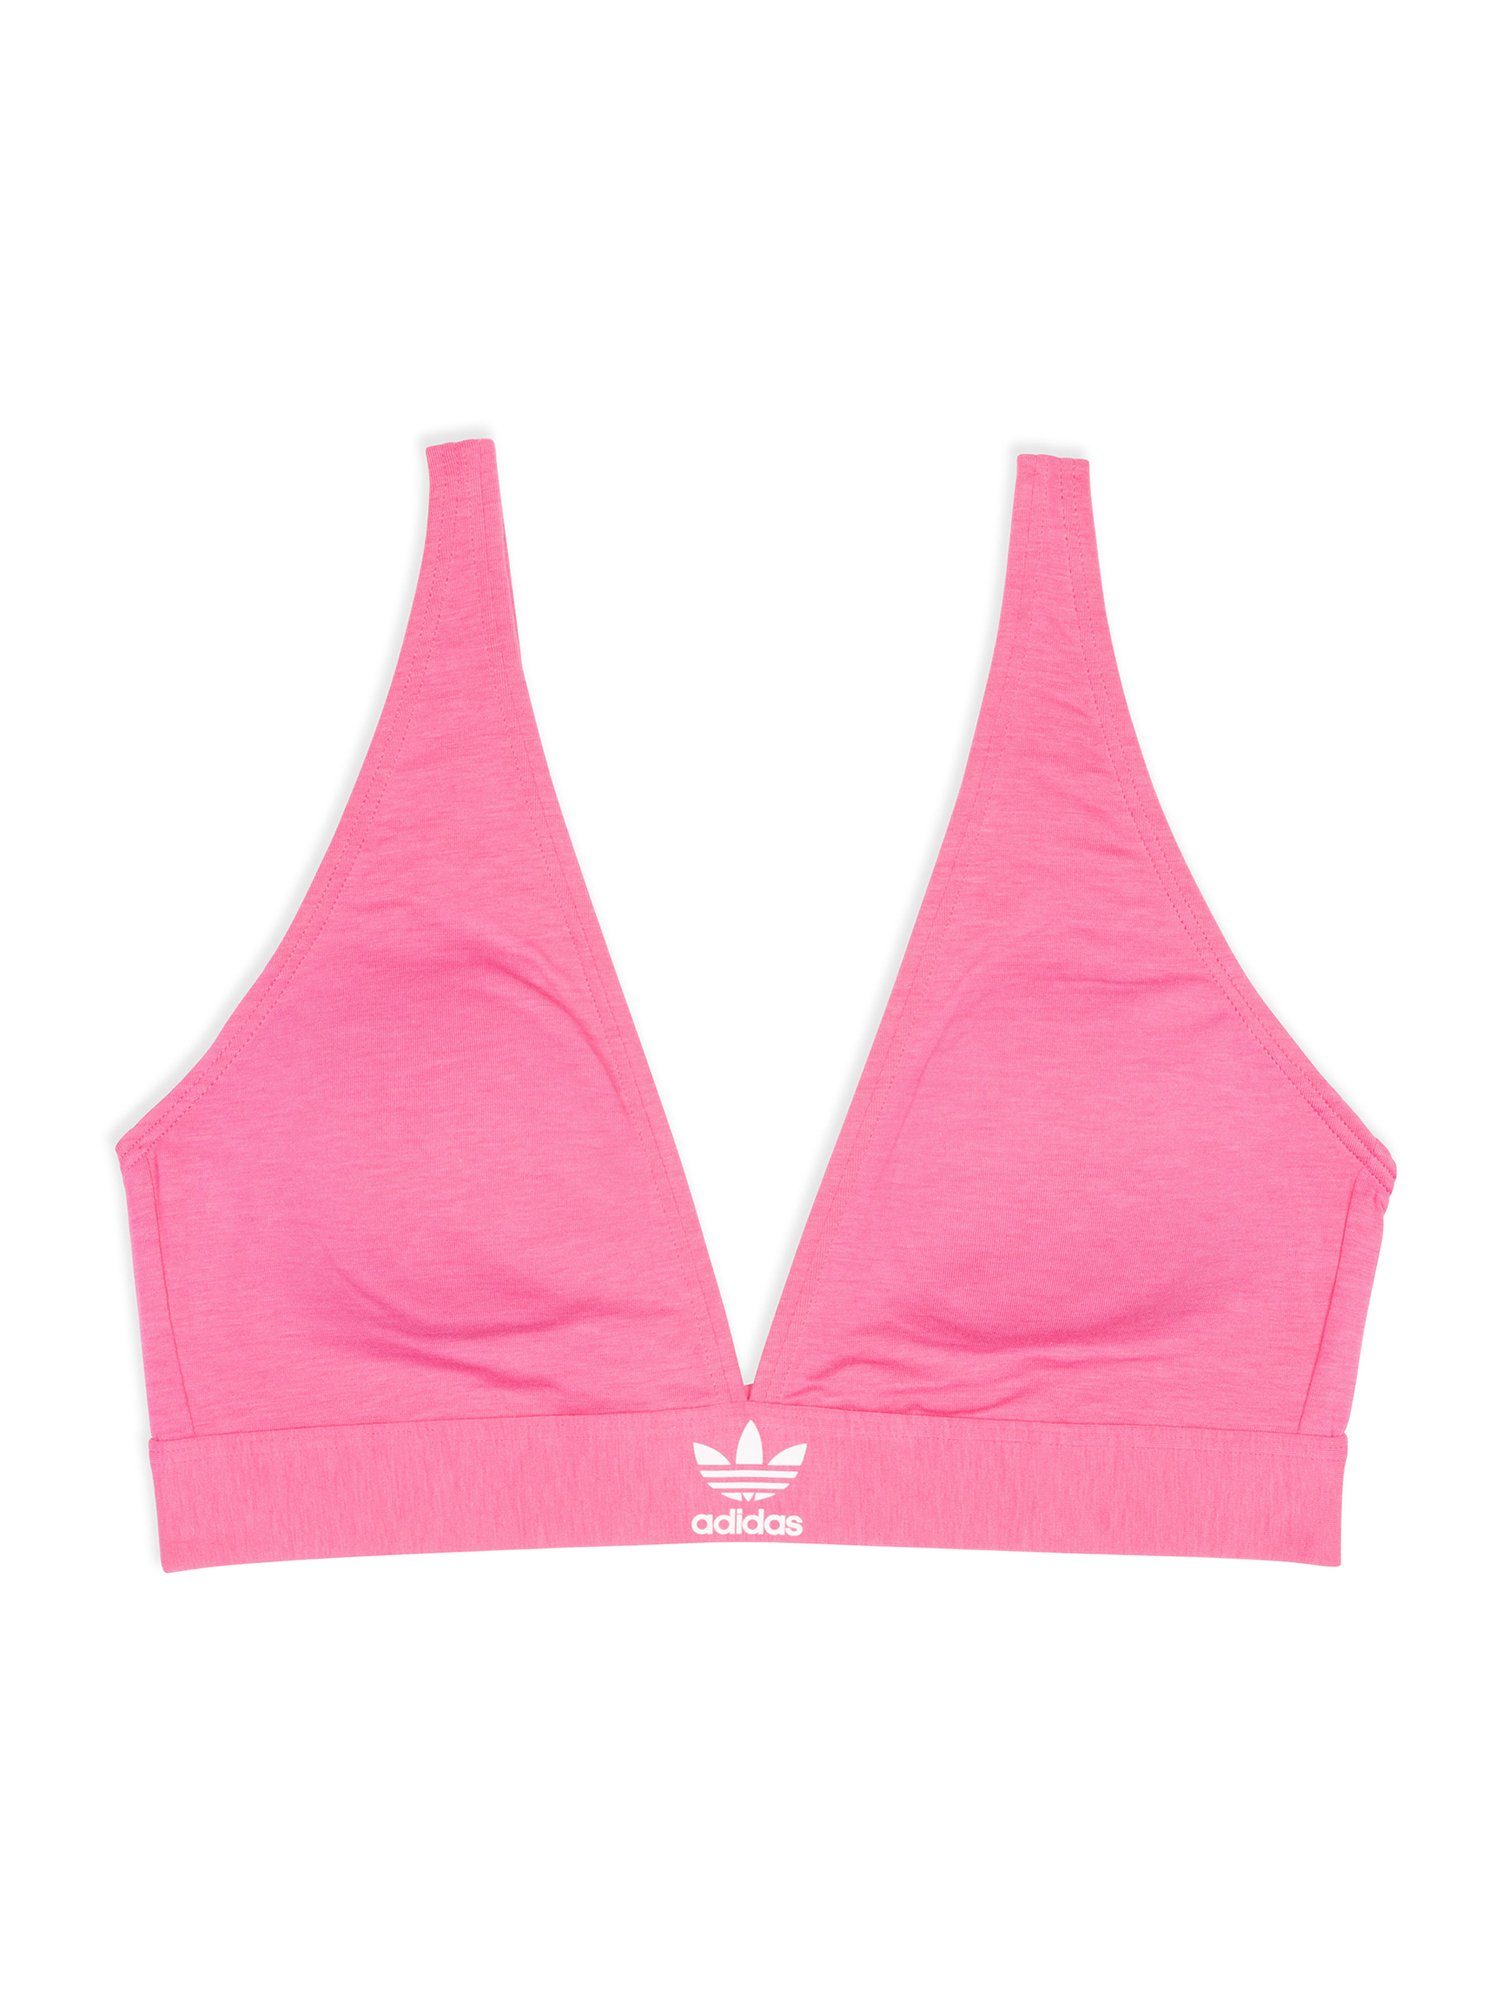 bra Unlined bralette Triangel-BH adidas Originals bustier pink lucid